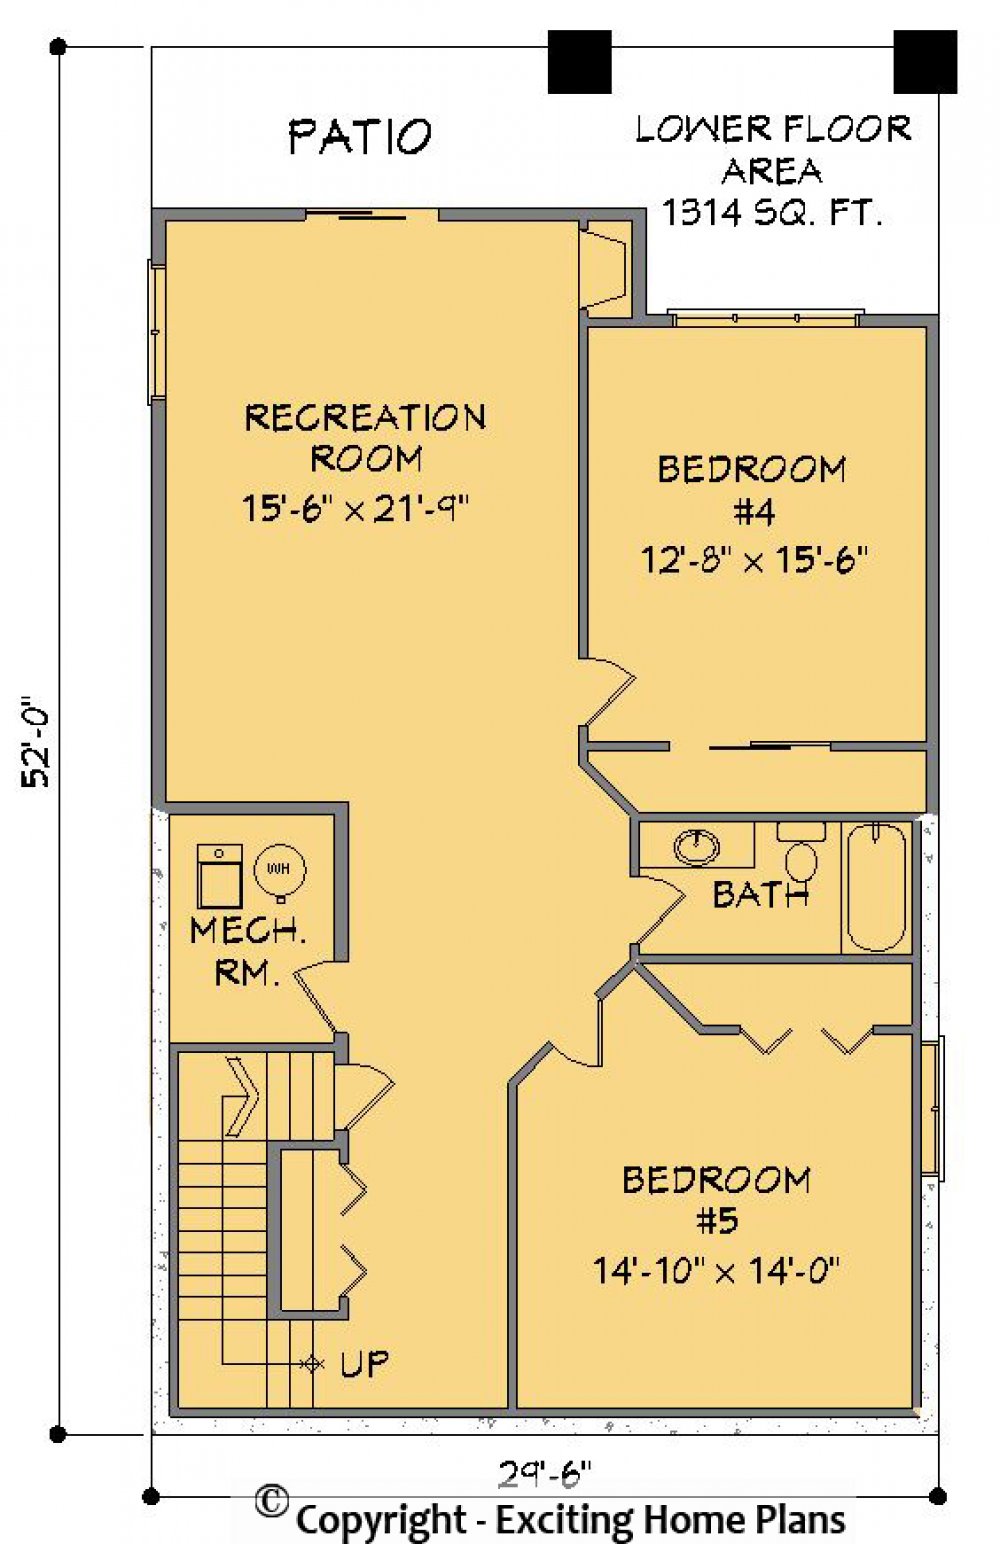 House Plan E1268-10  Lower Floor Plan